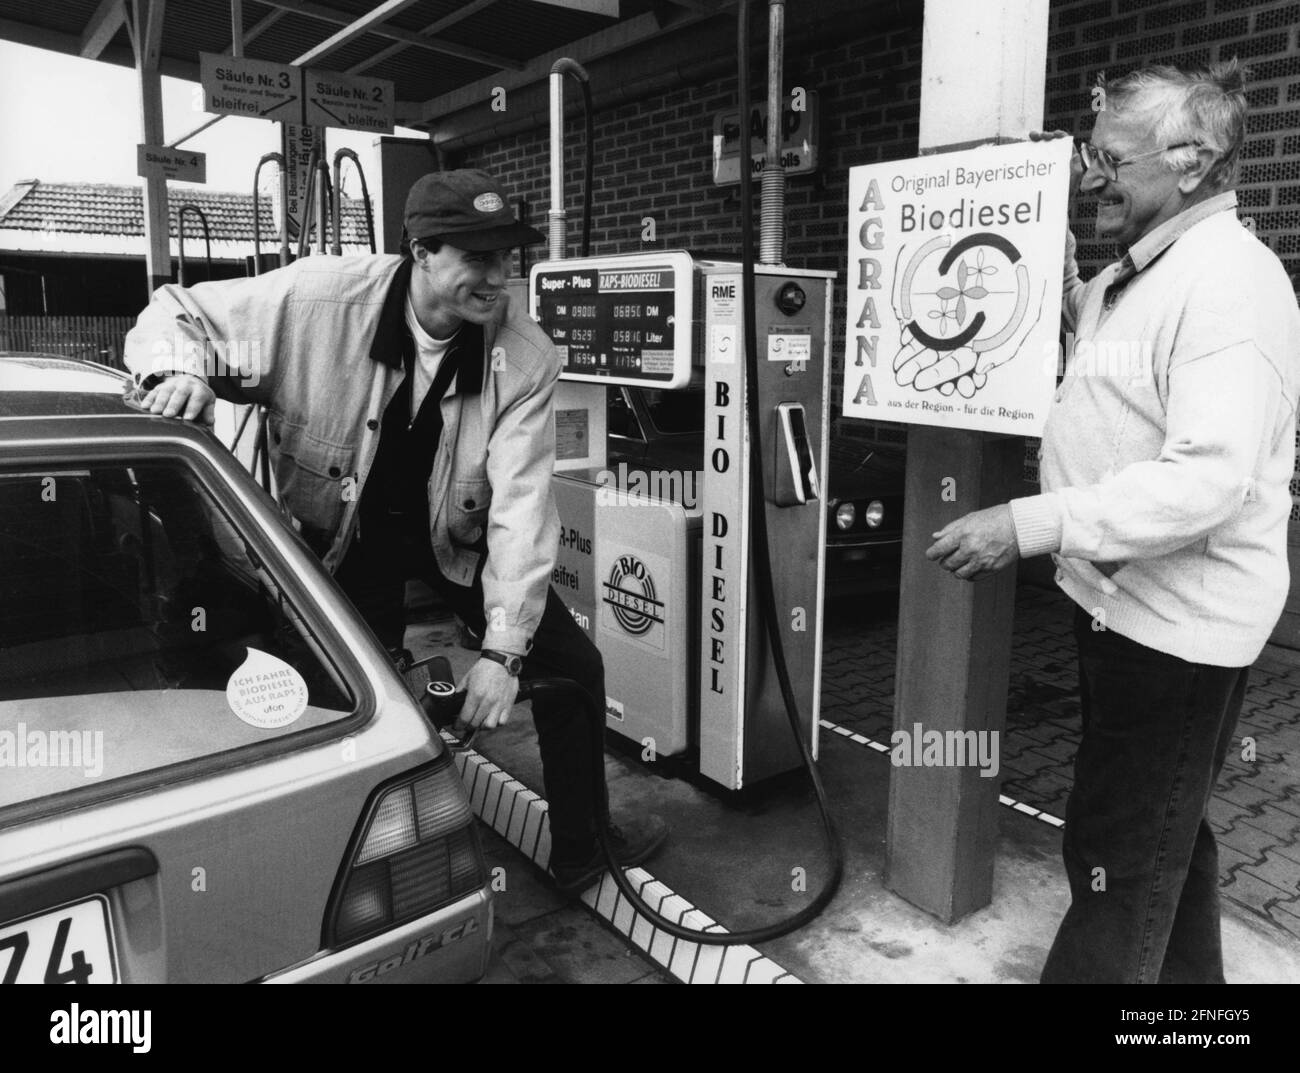 Tankstellenbesitzer Eduard Wiesheu aus Moosburg (rechts) wirbt an seiner Tankstelle für Biodiesel aus bayerischer Produktion. [Automatisierte Übersetzung] Stockfoto